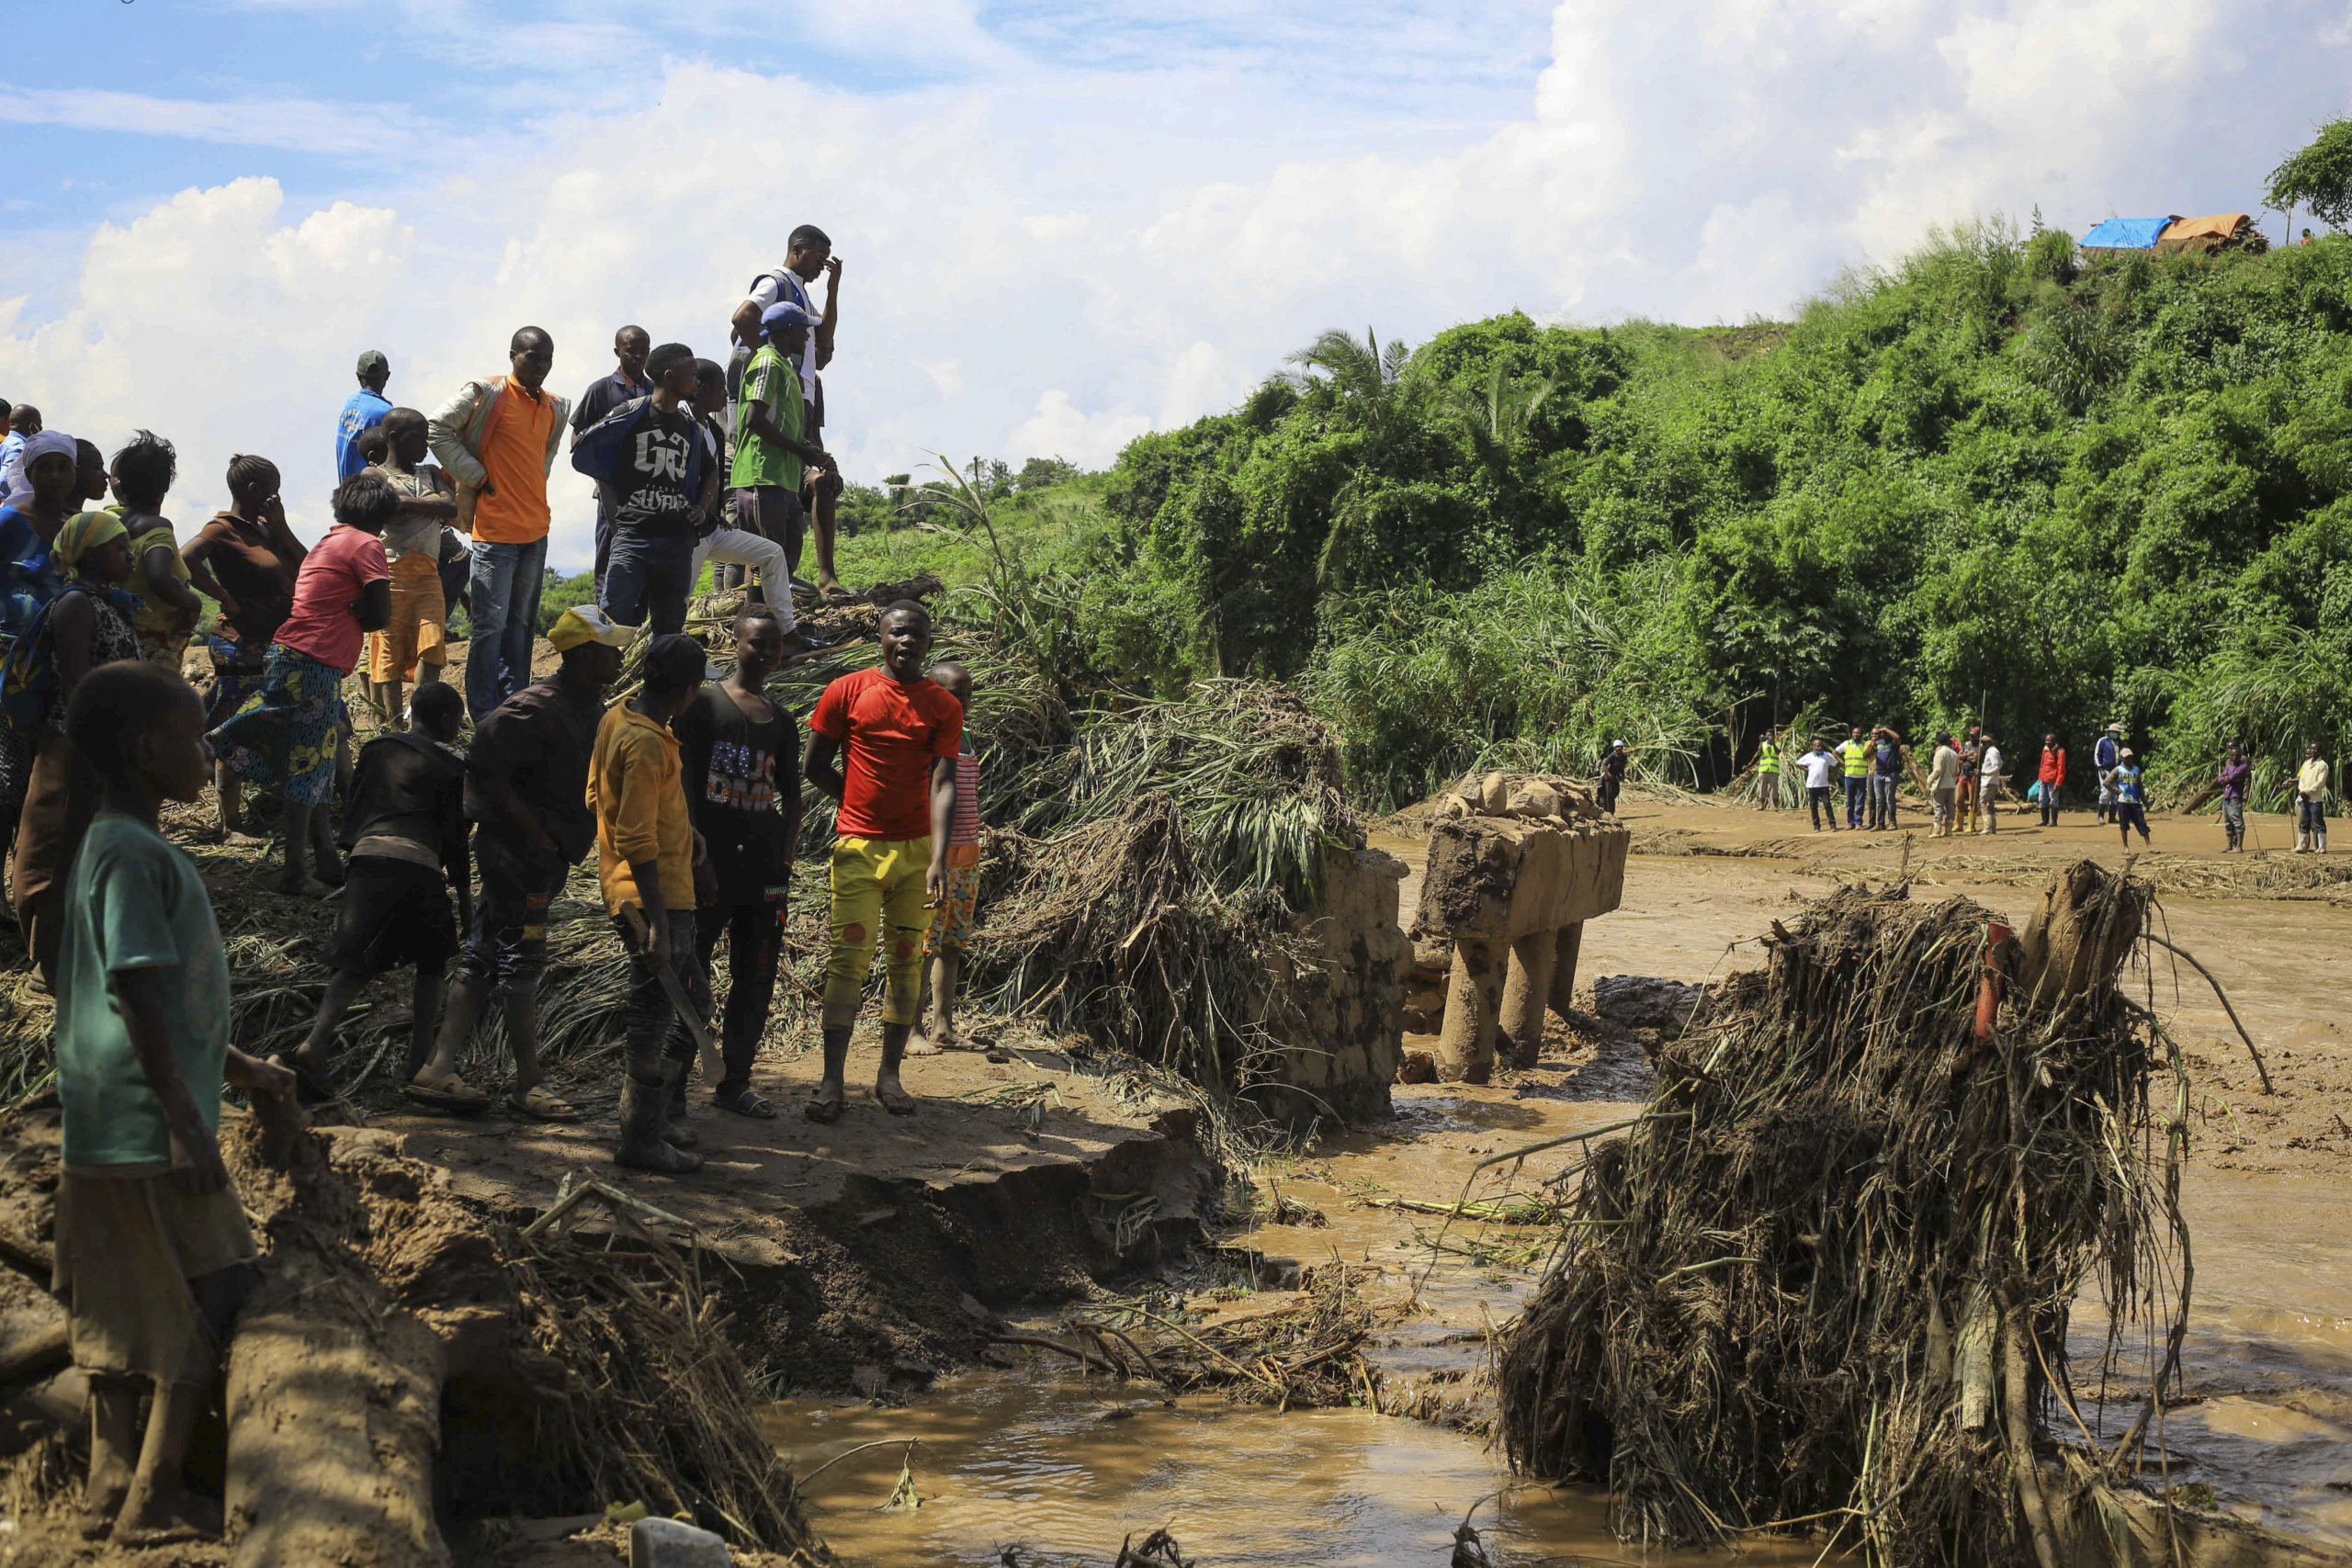 ΛΔ Κονγκό: Στους 169 οι νεκροί από τις πλημμύρες και τις κατολισθήσεις στην Κινσάσα, σύμφωνα με τον ΟΗΕ